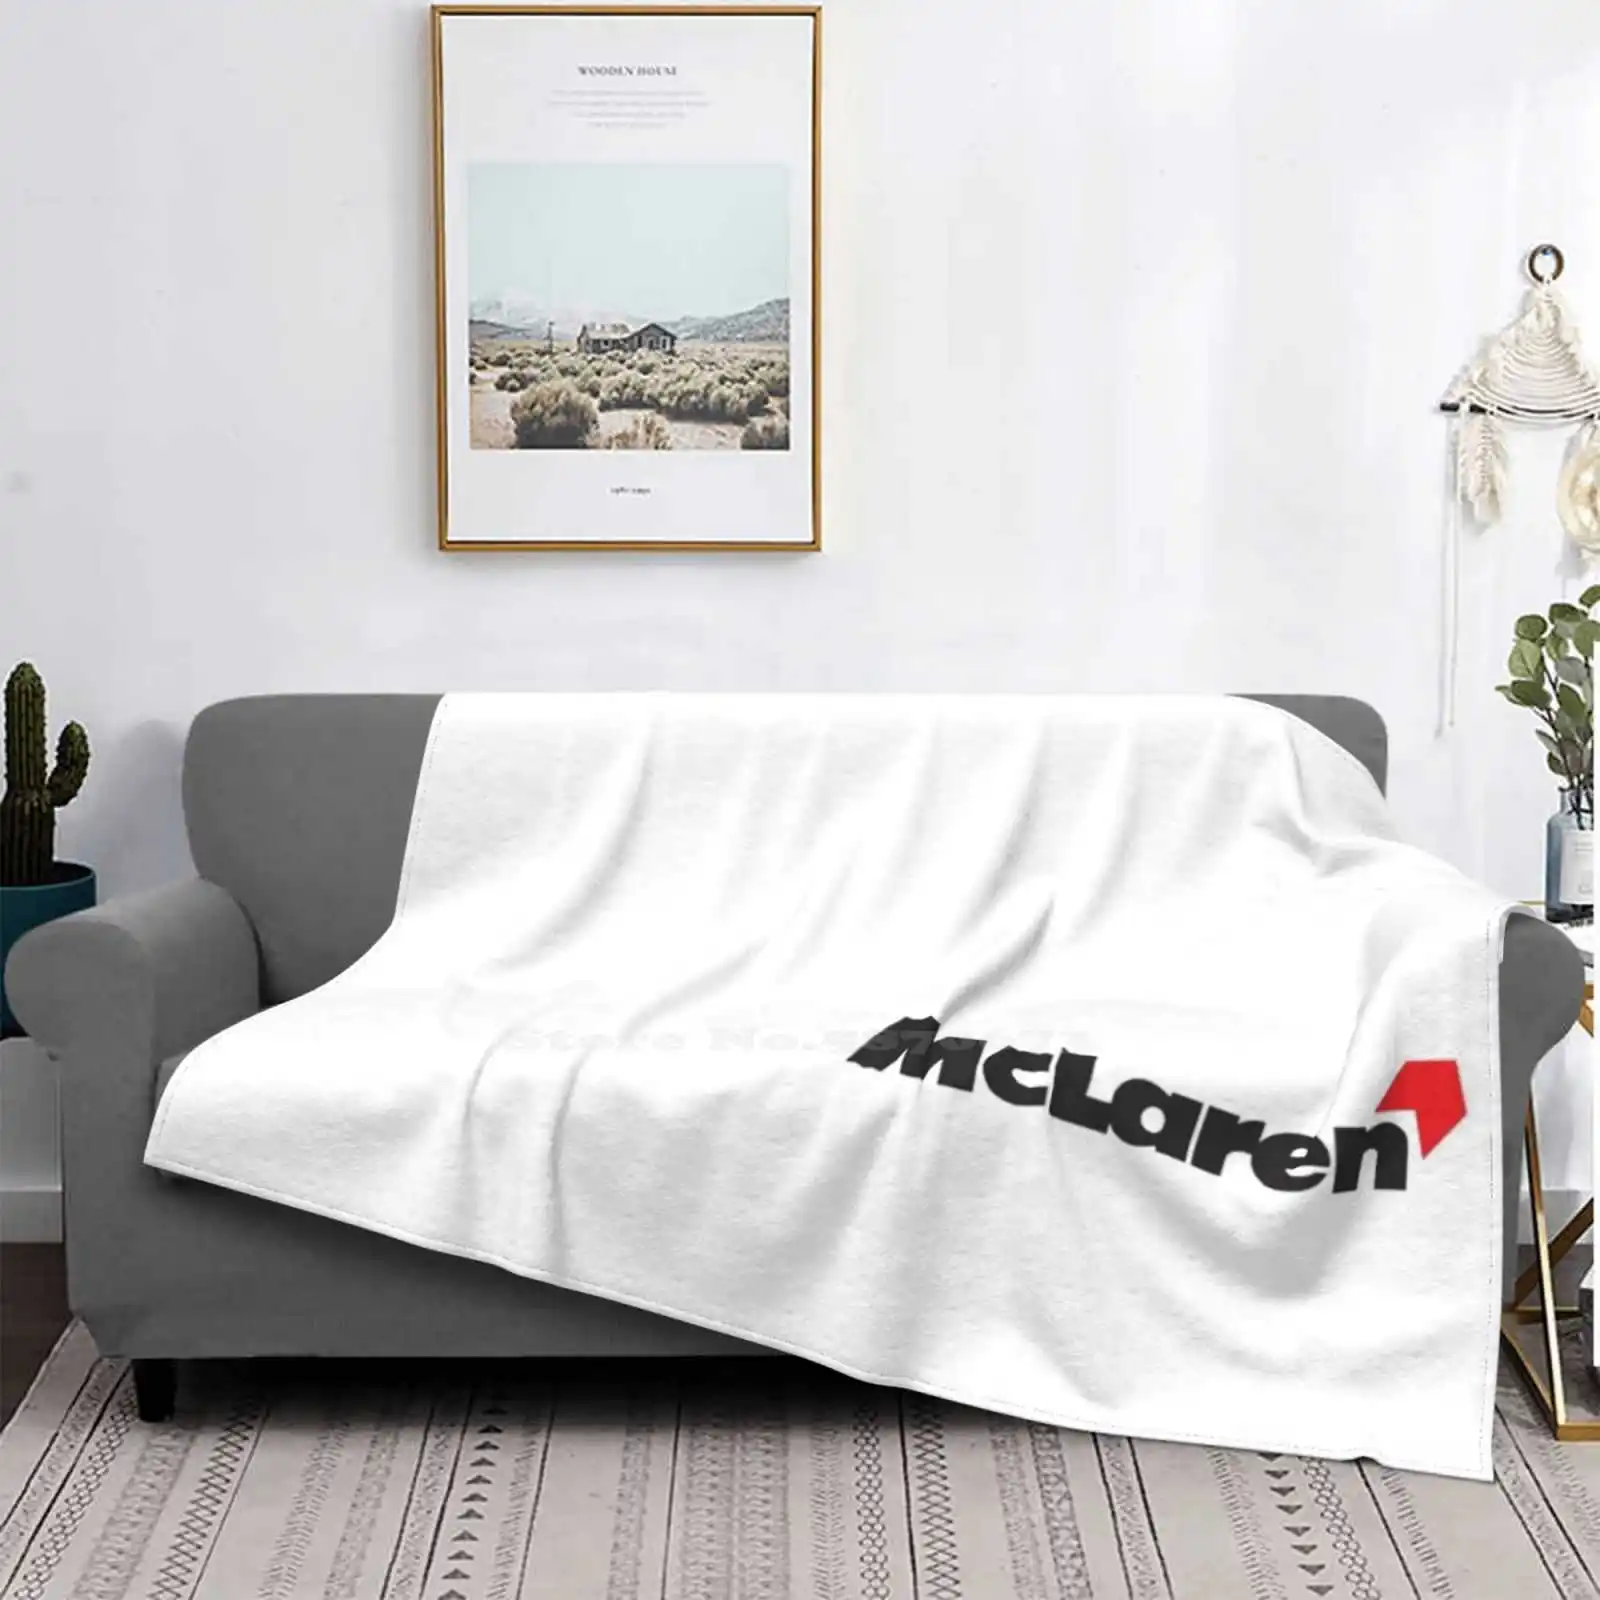 

Одеяло с логотипом Mclaren, одеяло с воздушным кондиционированием, мягкое одеяло, модель Mclaren Car 2020 Vettel Car Racing Фернандо Алонсо